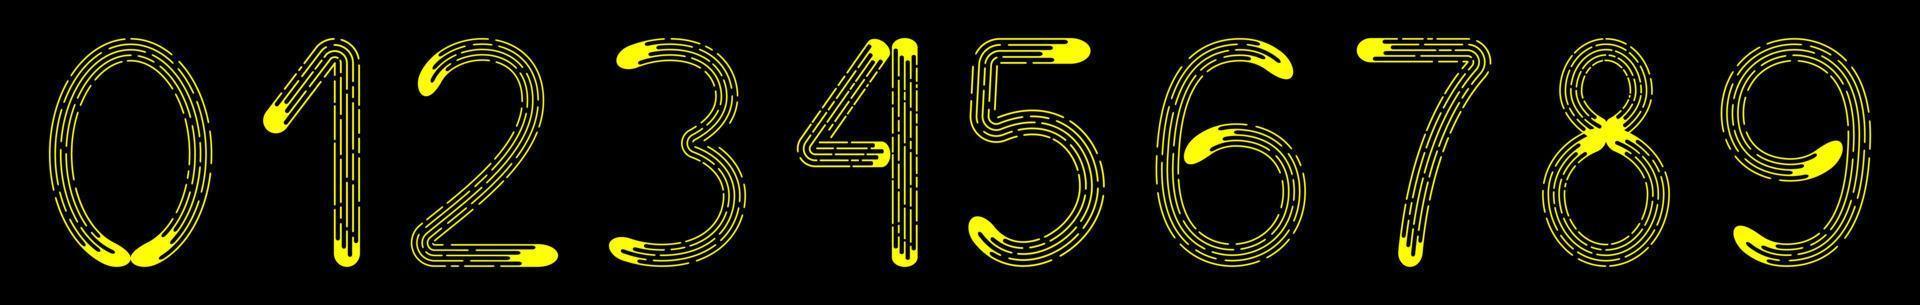 Zahlensatz 0-9 aus gelben gepunkteten Linien isoliert auf schwarzem Hintergrund. Gestaltungselement vektor